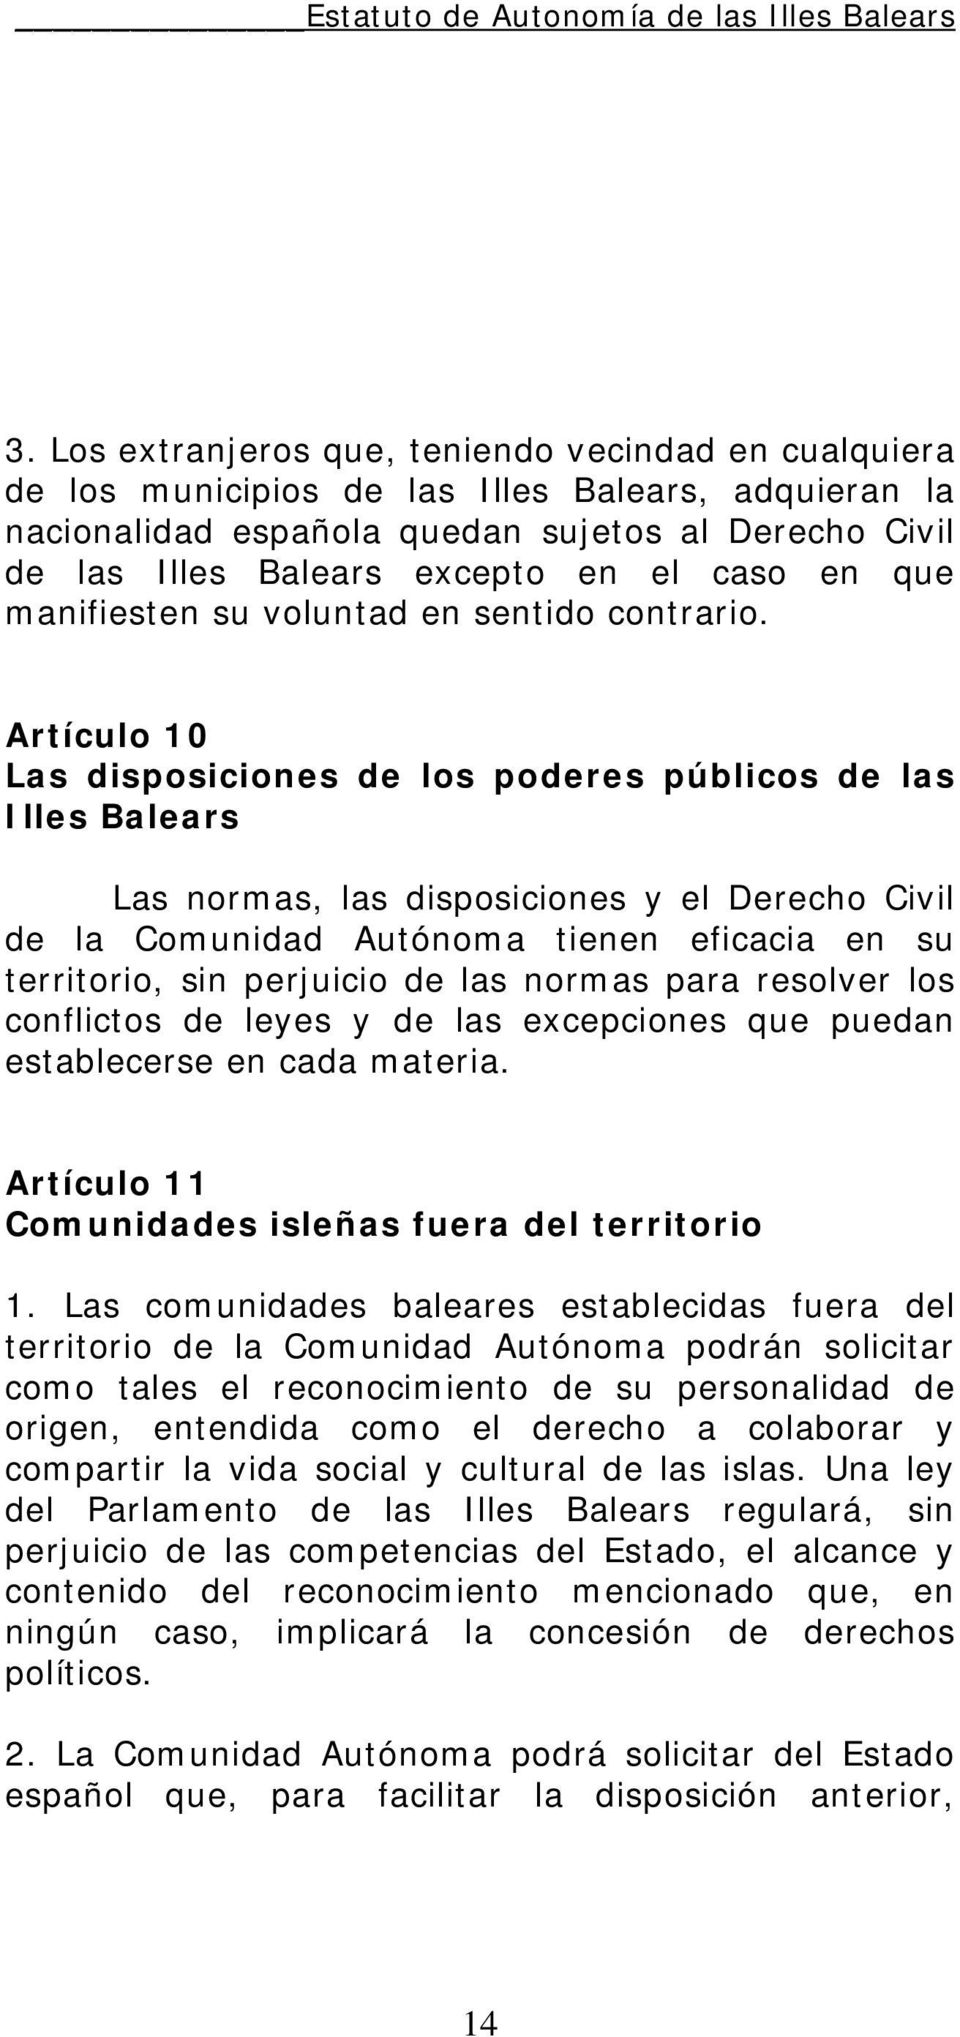 Artículo 10 Las disposiciones de los poderes públicos de las Illes Balears Las normas, las disposiciones y el Derecho Civil de la Comunidad Autónoma tienen eficacia en su territorio, sin perjuicio de